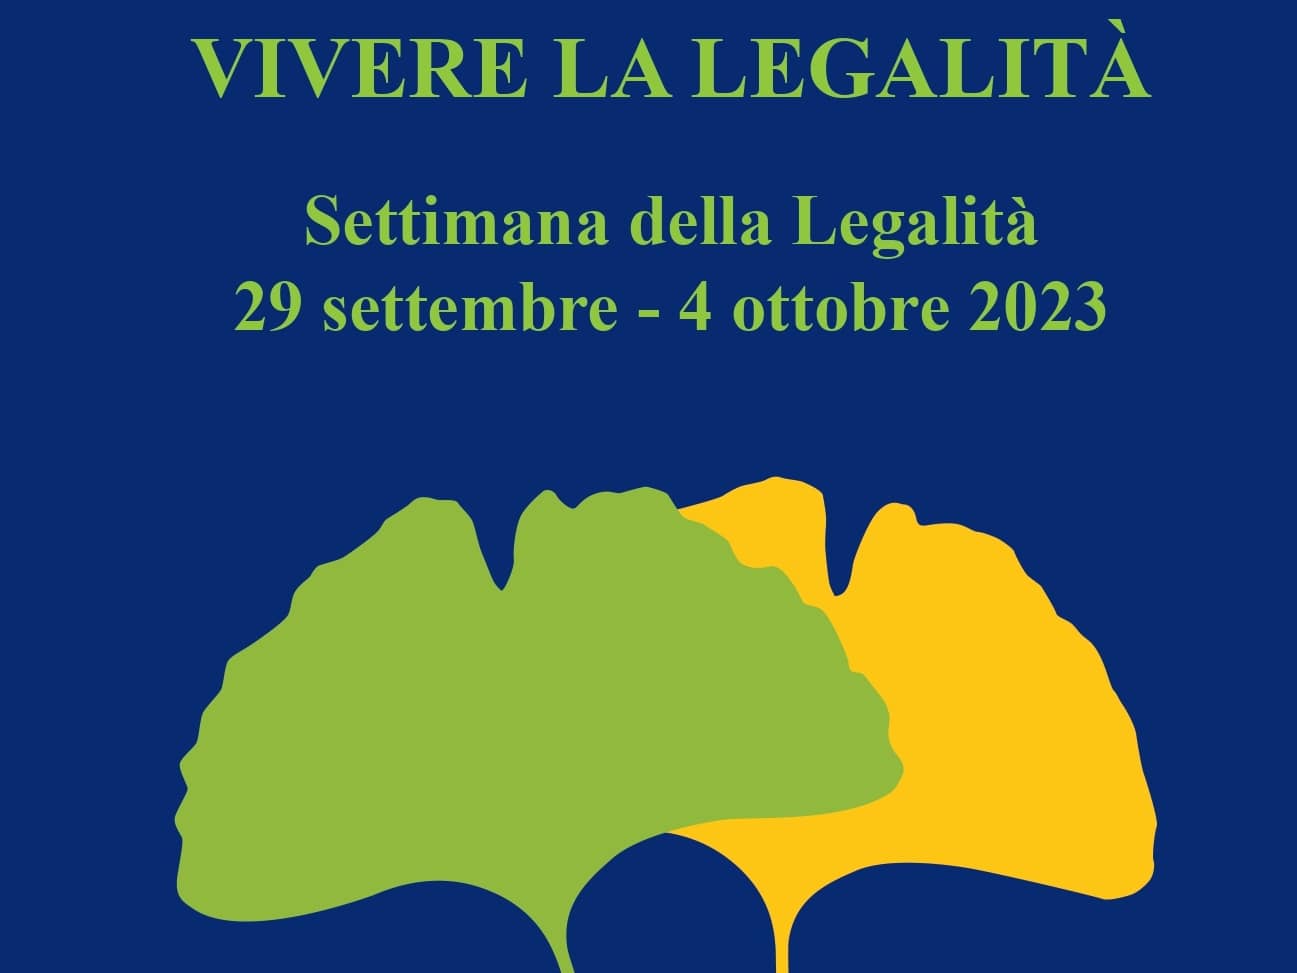 Settimana della Legalità 2023 - Forlì Vivere la Legalità 